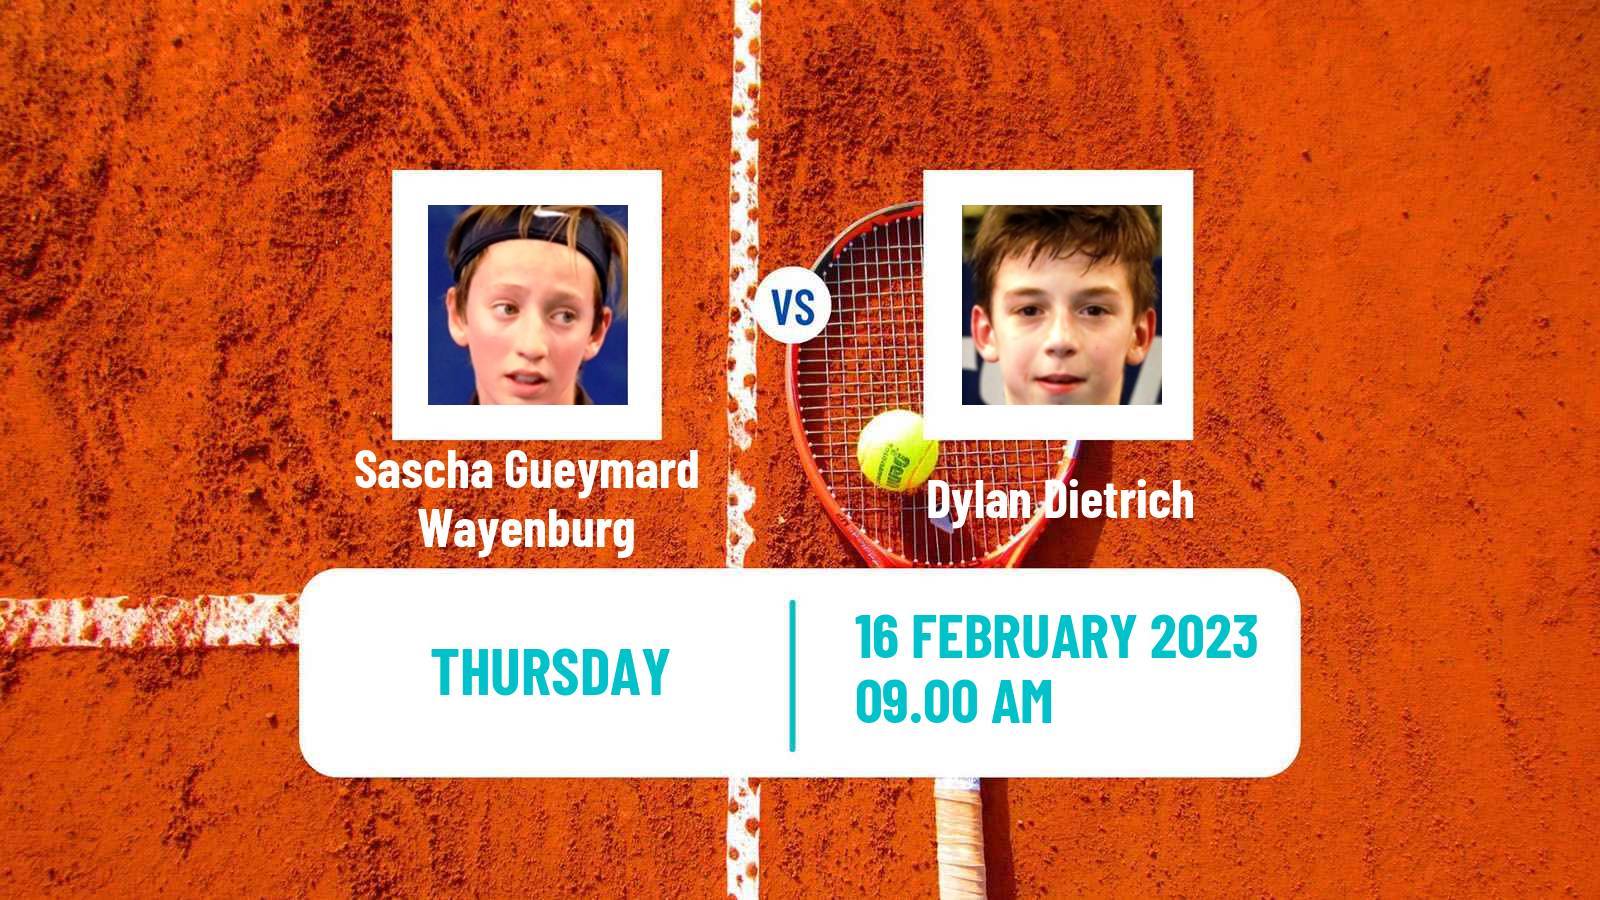 Tennis ITF Tournaments Sascha Gueymard Wayenburg - Dylan Dietrich